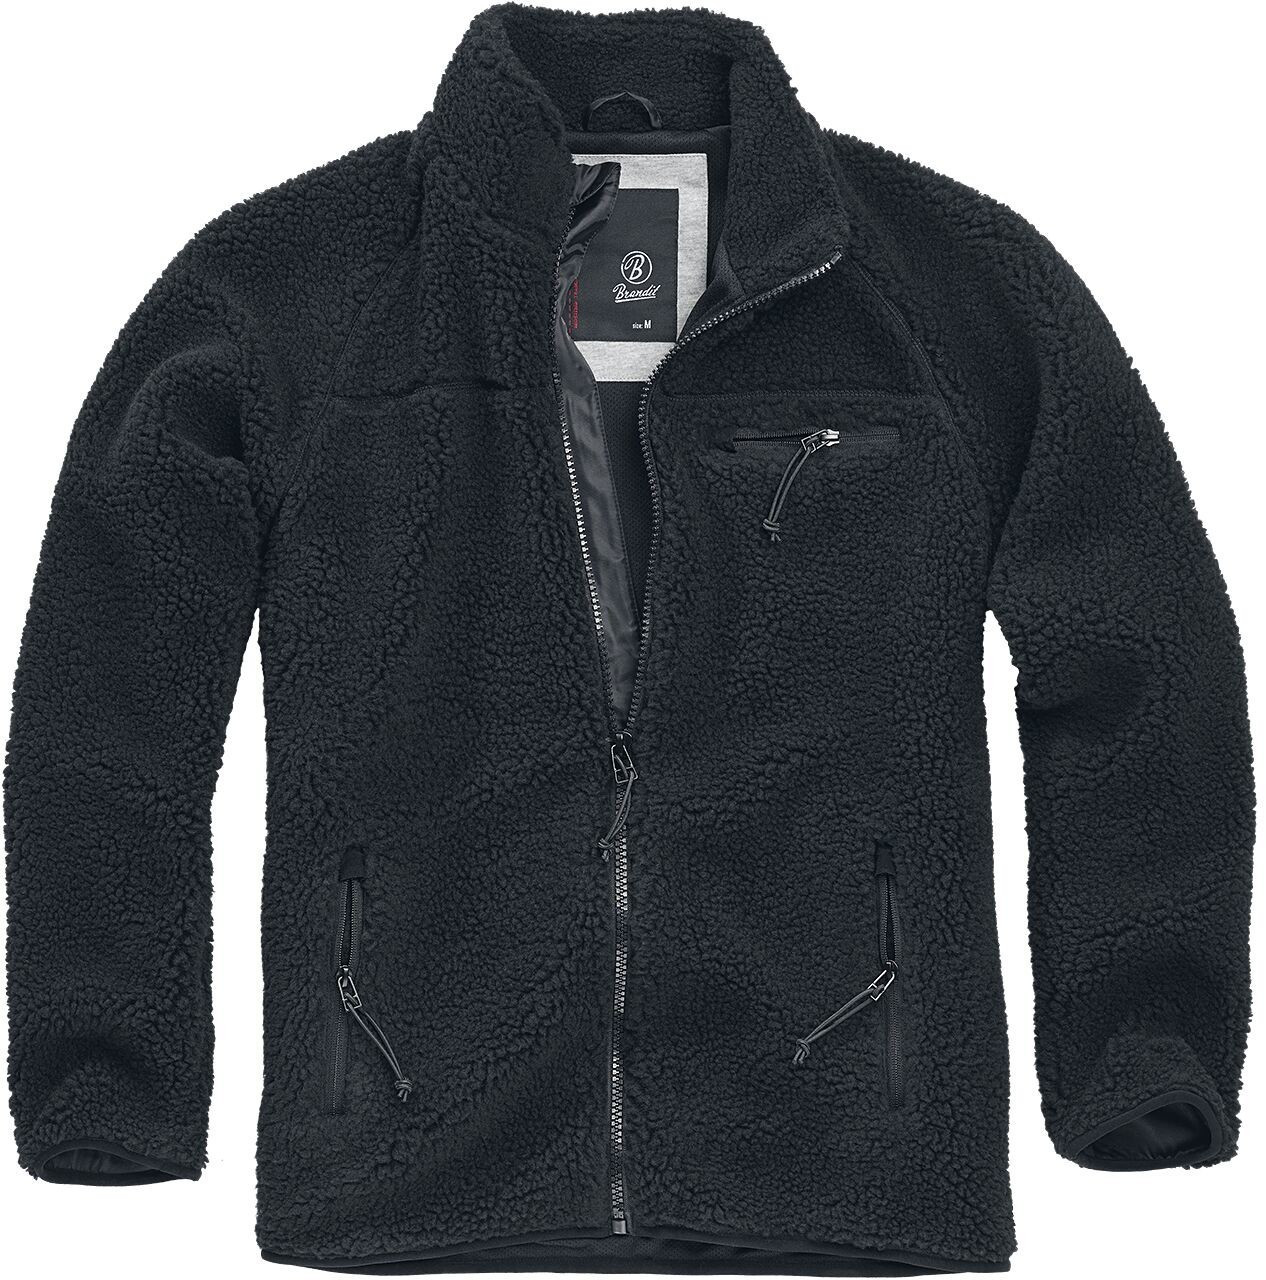 Buy Brandit Teddyfleece Jacket (5021-2) black from £29.39 (Today ...